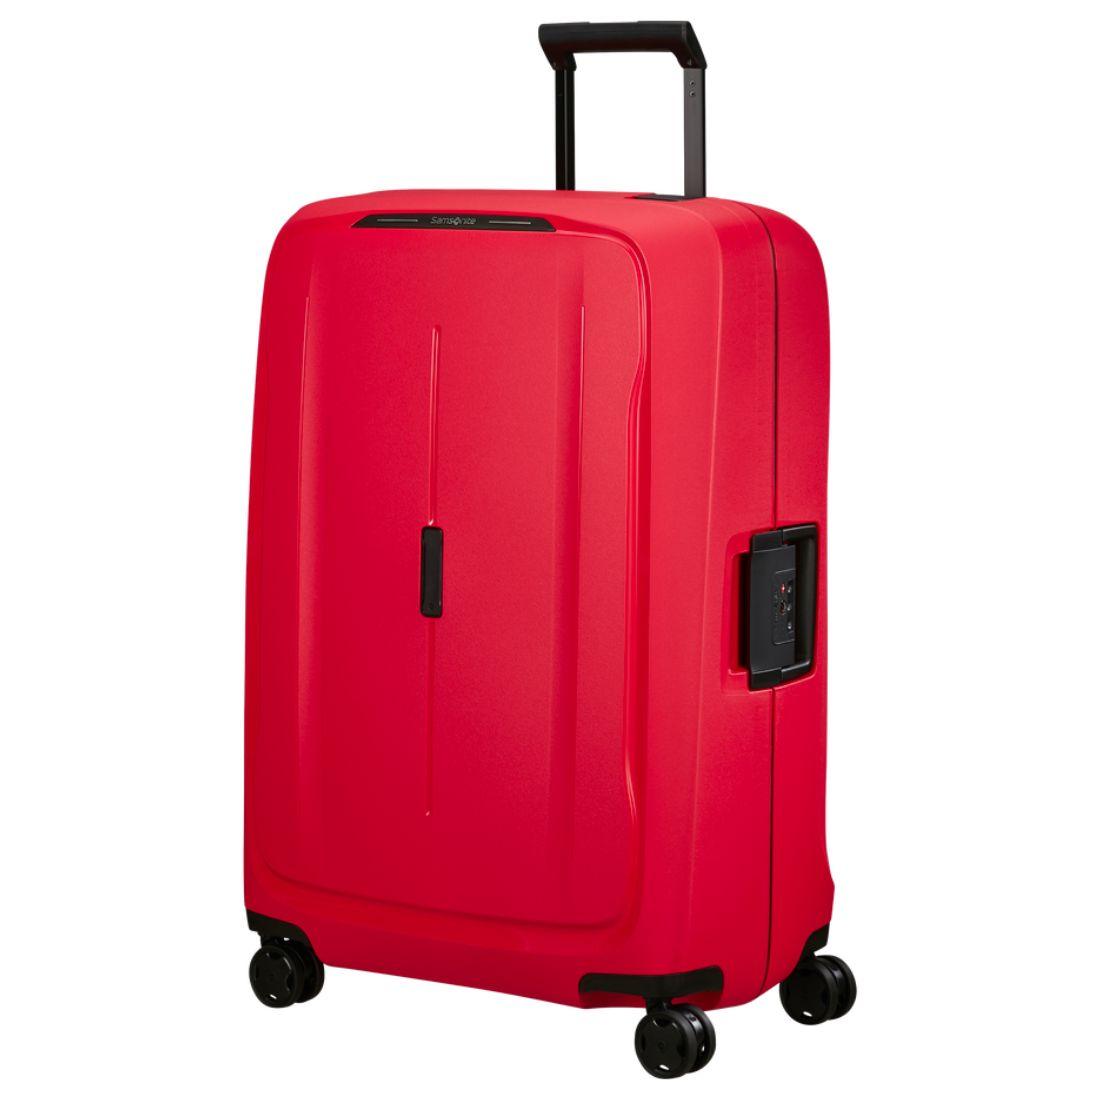 Voorzijde Samsonite Essent 75 koffer rood #kleur_rood